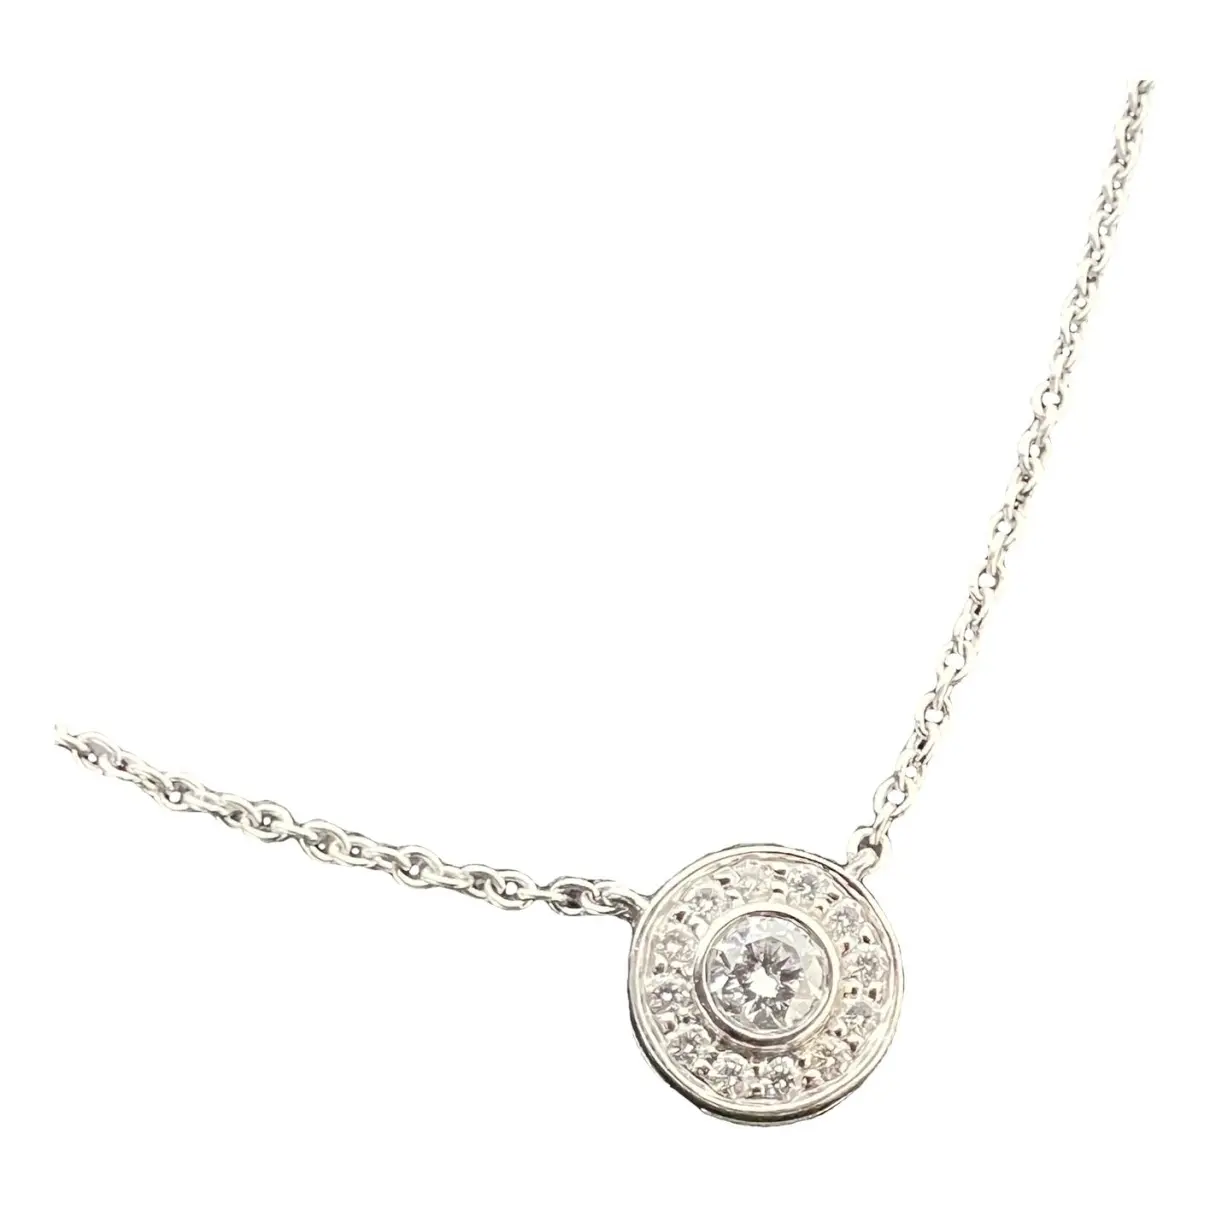 Tiffany Soleste platinum necklace